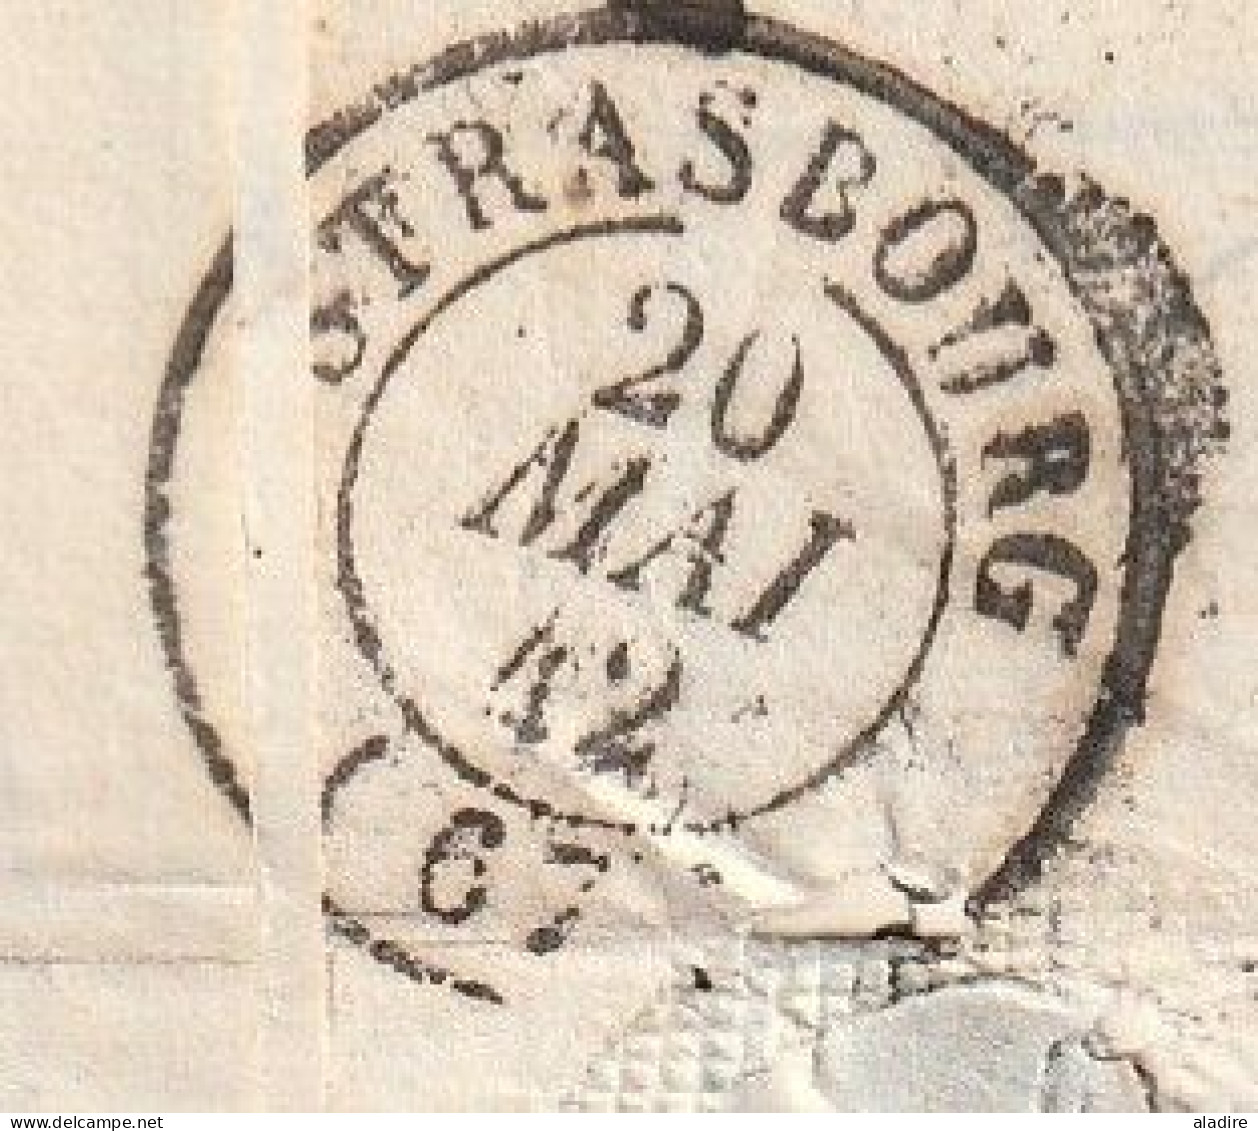 1842 - lettre pliée avec correspondance de BESANCON, grand cachet  vers STRASBOURG - cad d'arrivée - taxe 5